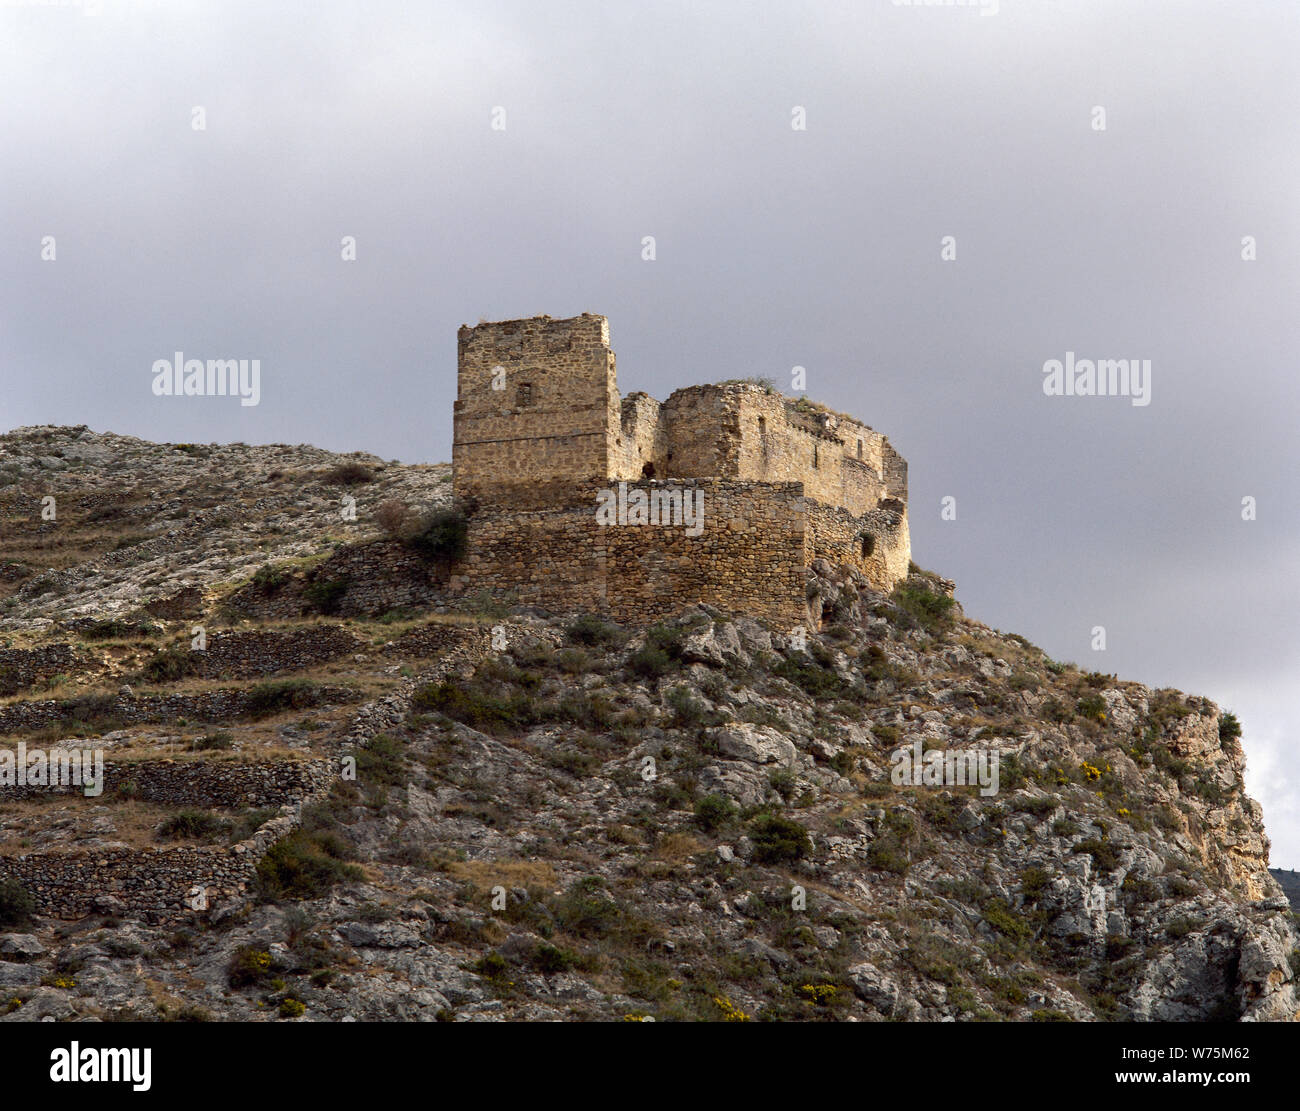 L'Espagne. La Rioja. Muro de Aguas. Ancienne église de Sainte Marie (16e siècle). Les trois autres murs étaient une partie de la tour du château, appelé "Castillo" (château). Banque D'Images